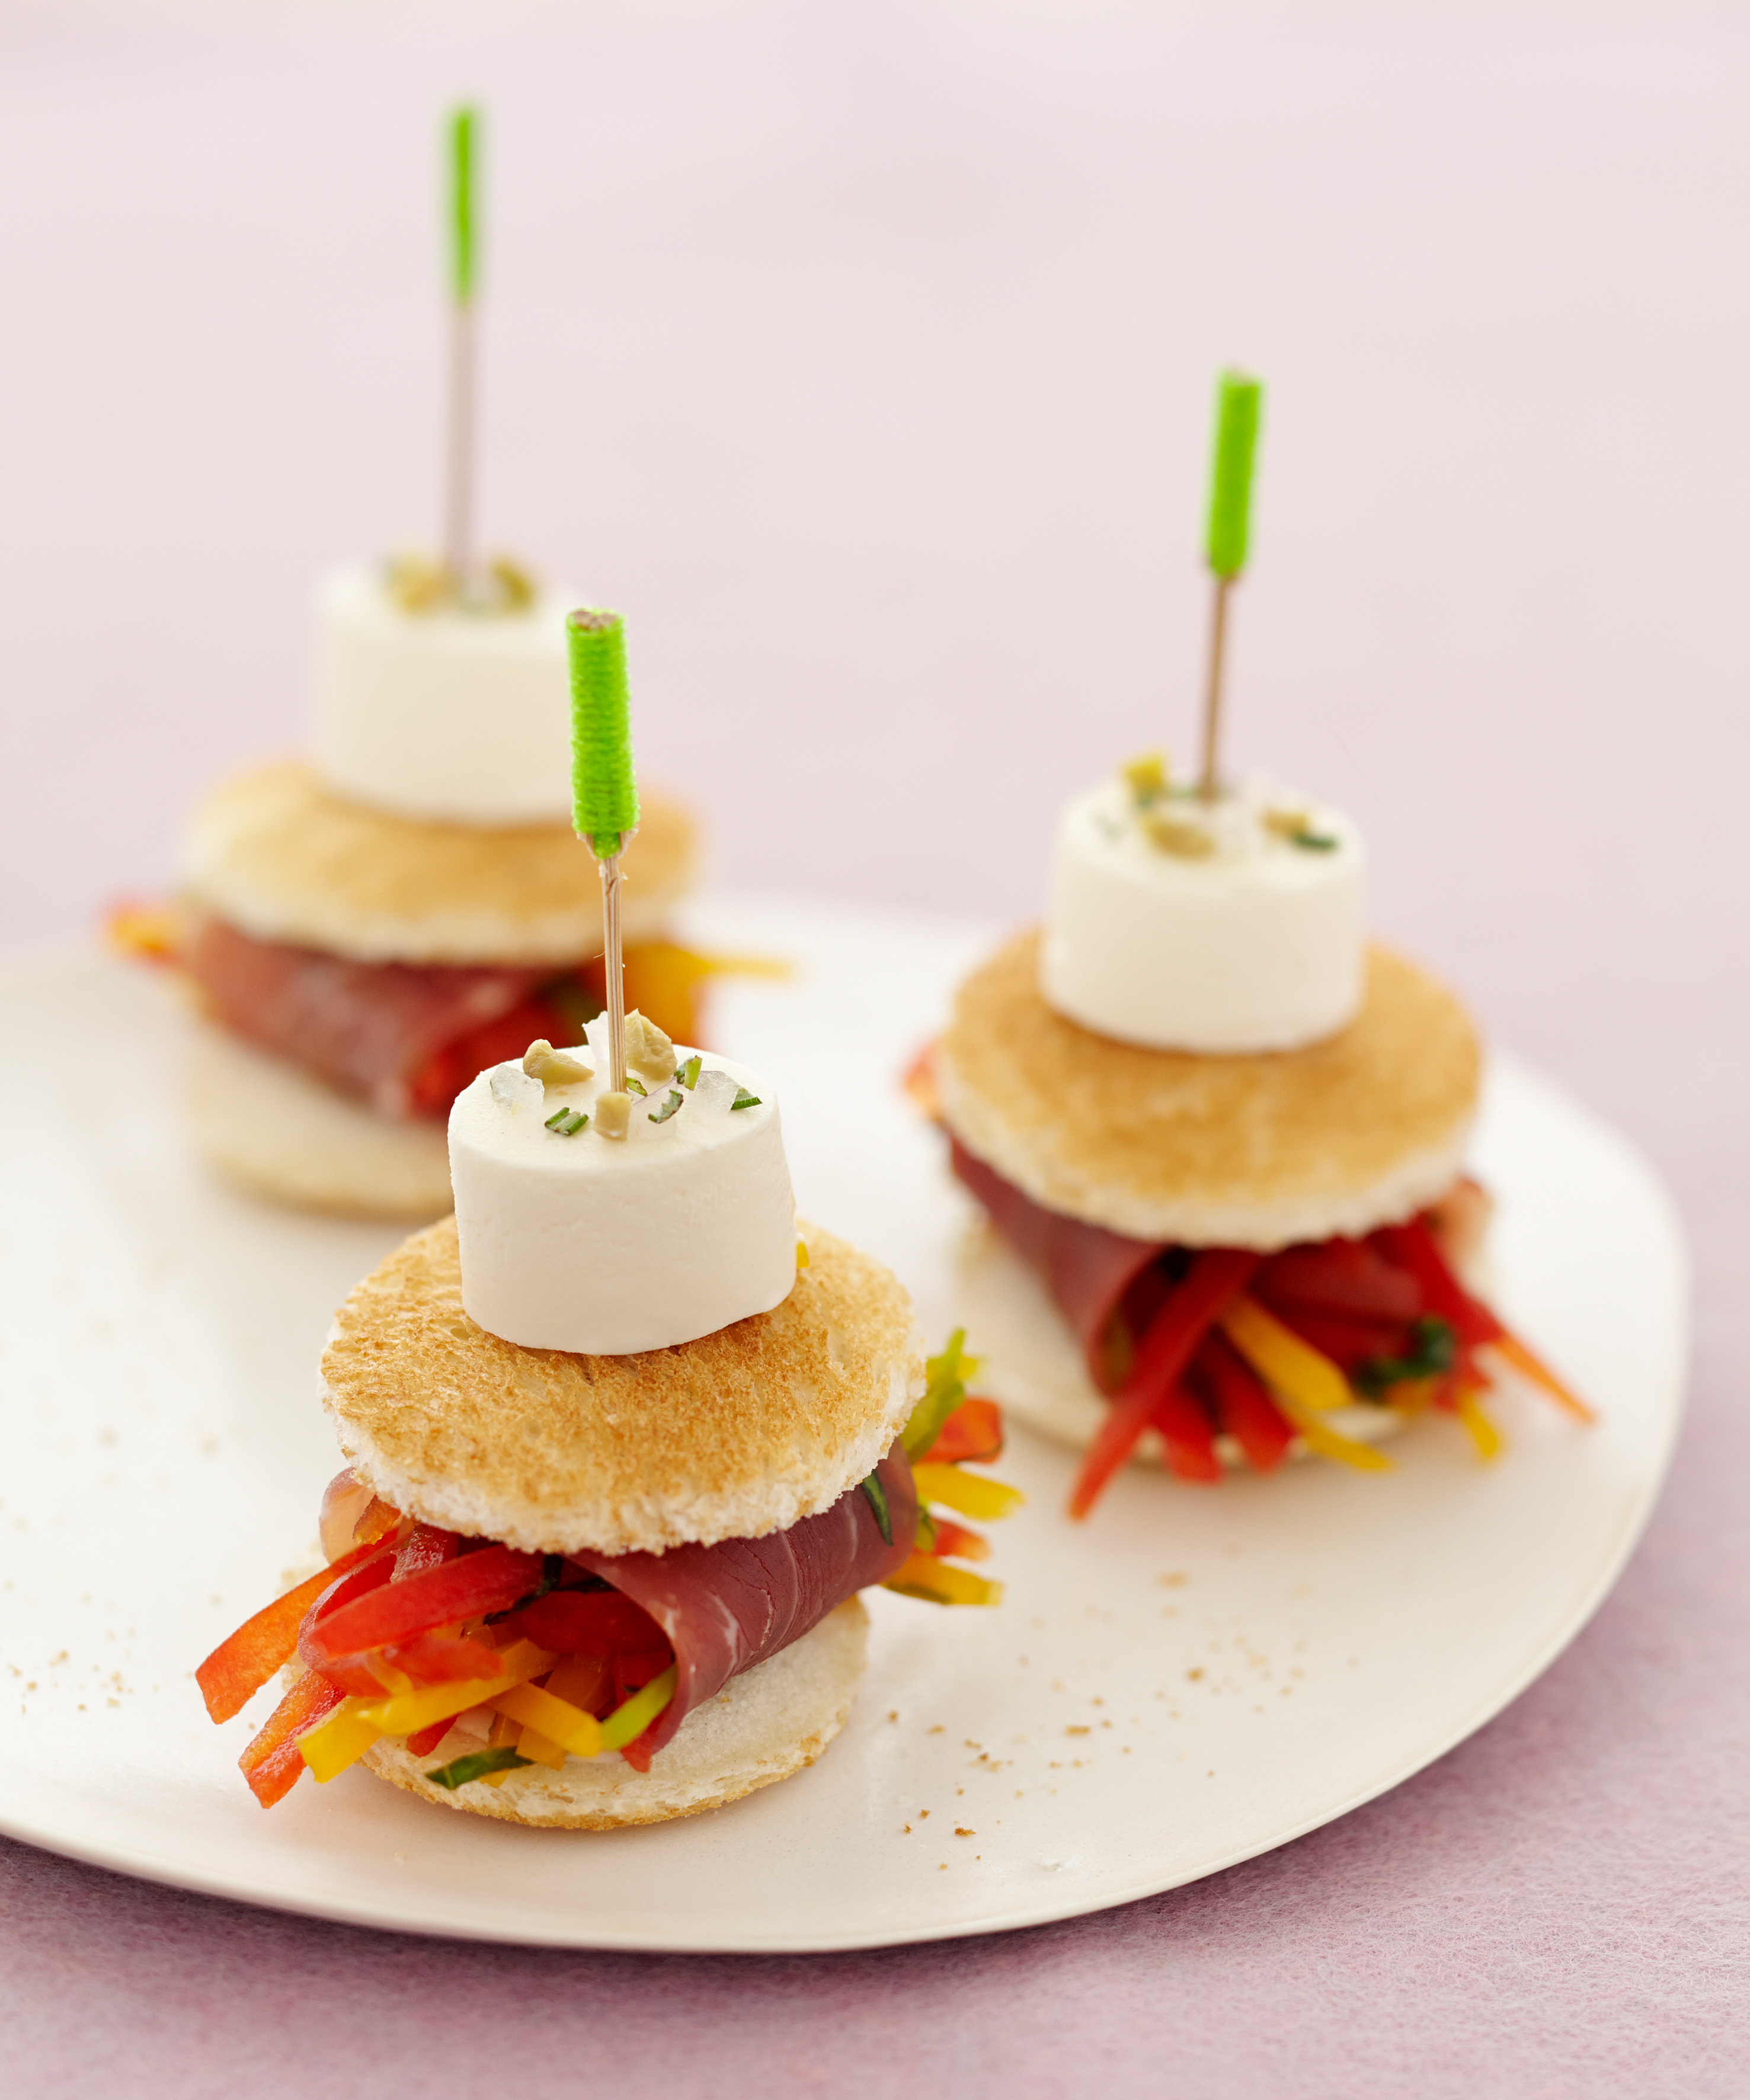 Gemüsiges Mini-Sandwich - perfekt für Partys